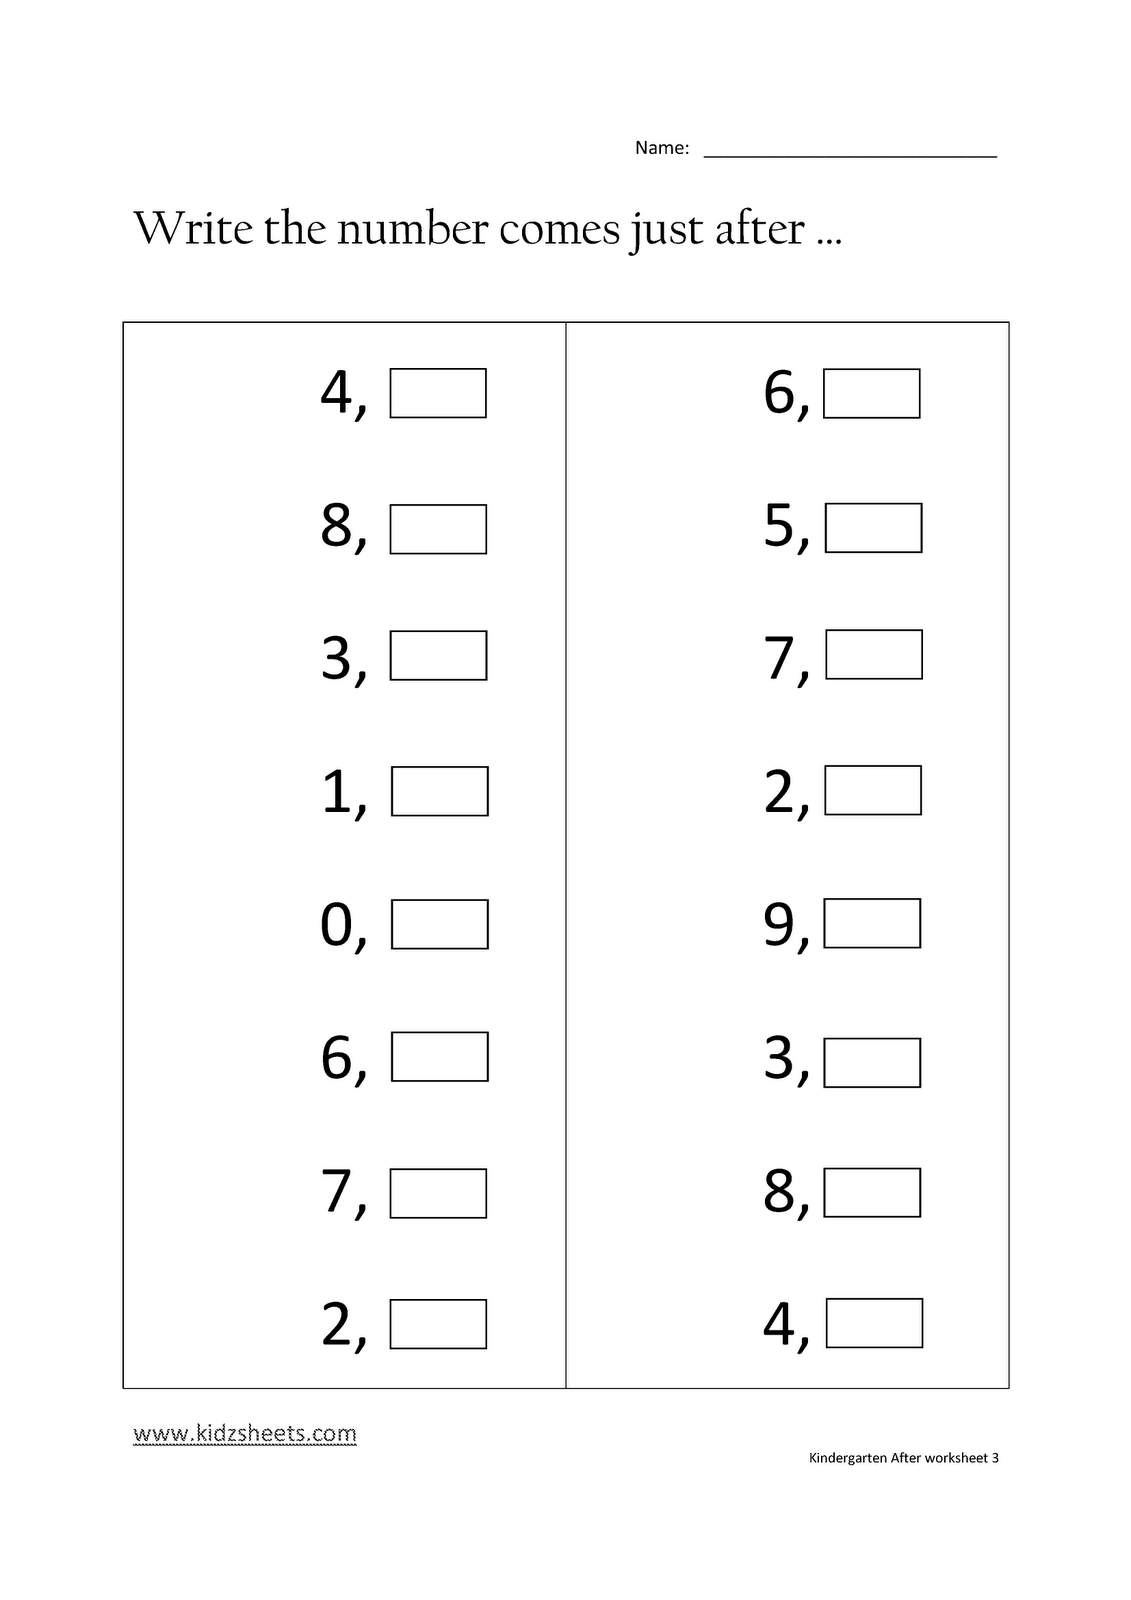 Kindergarten Number Worksheets Image